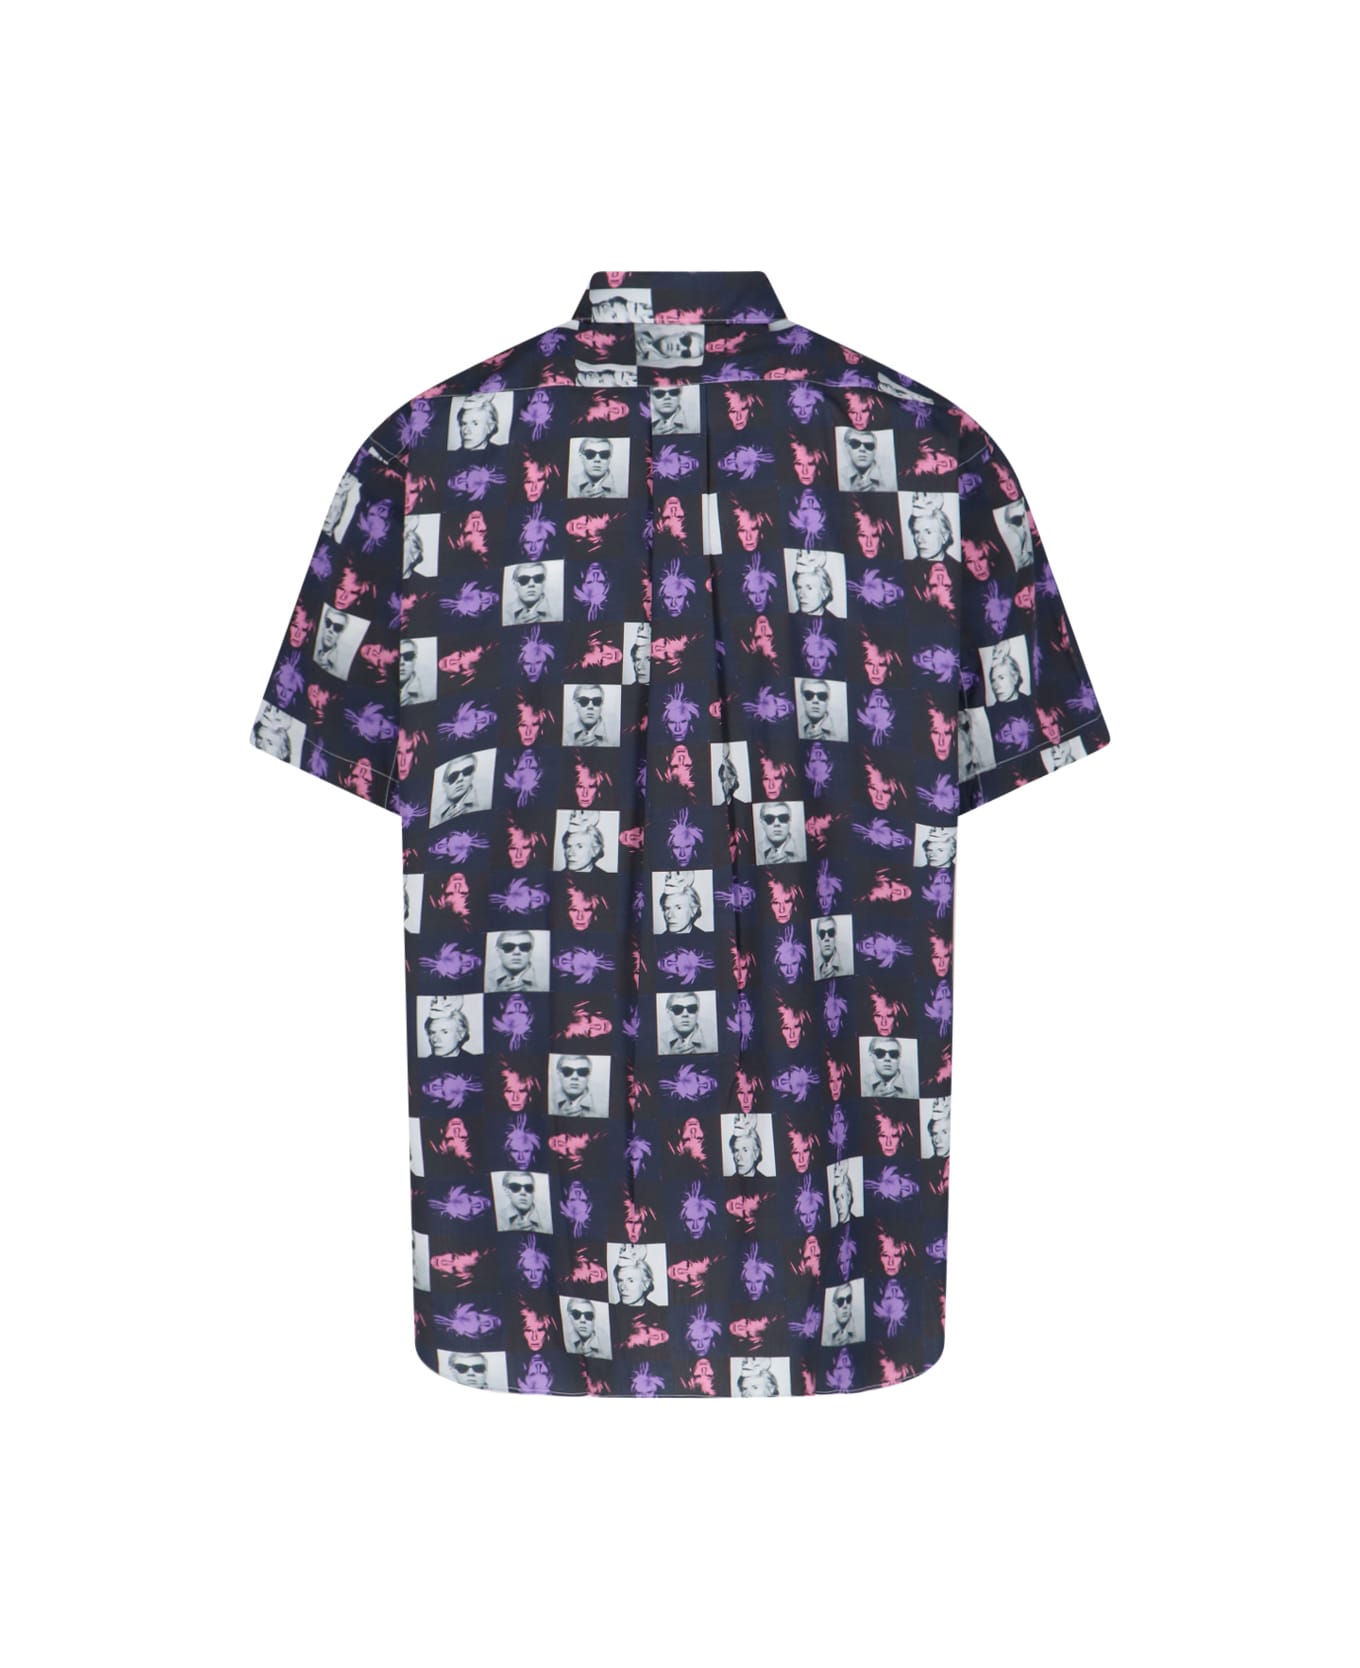 Comme des Garçons 'warhol' Shirt - Multicolor シャツ